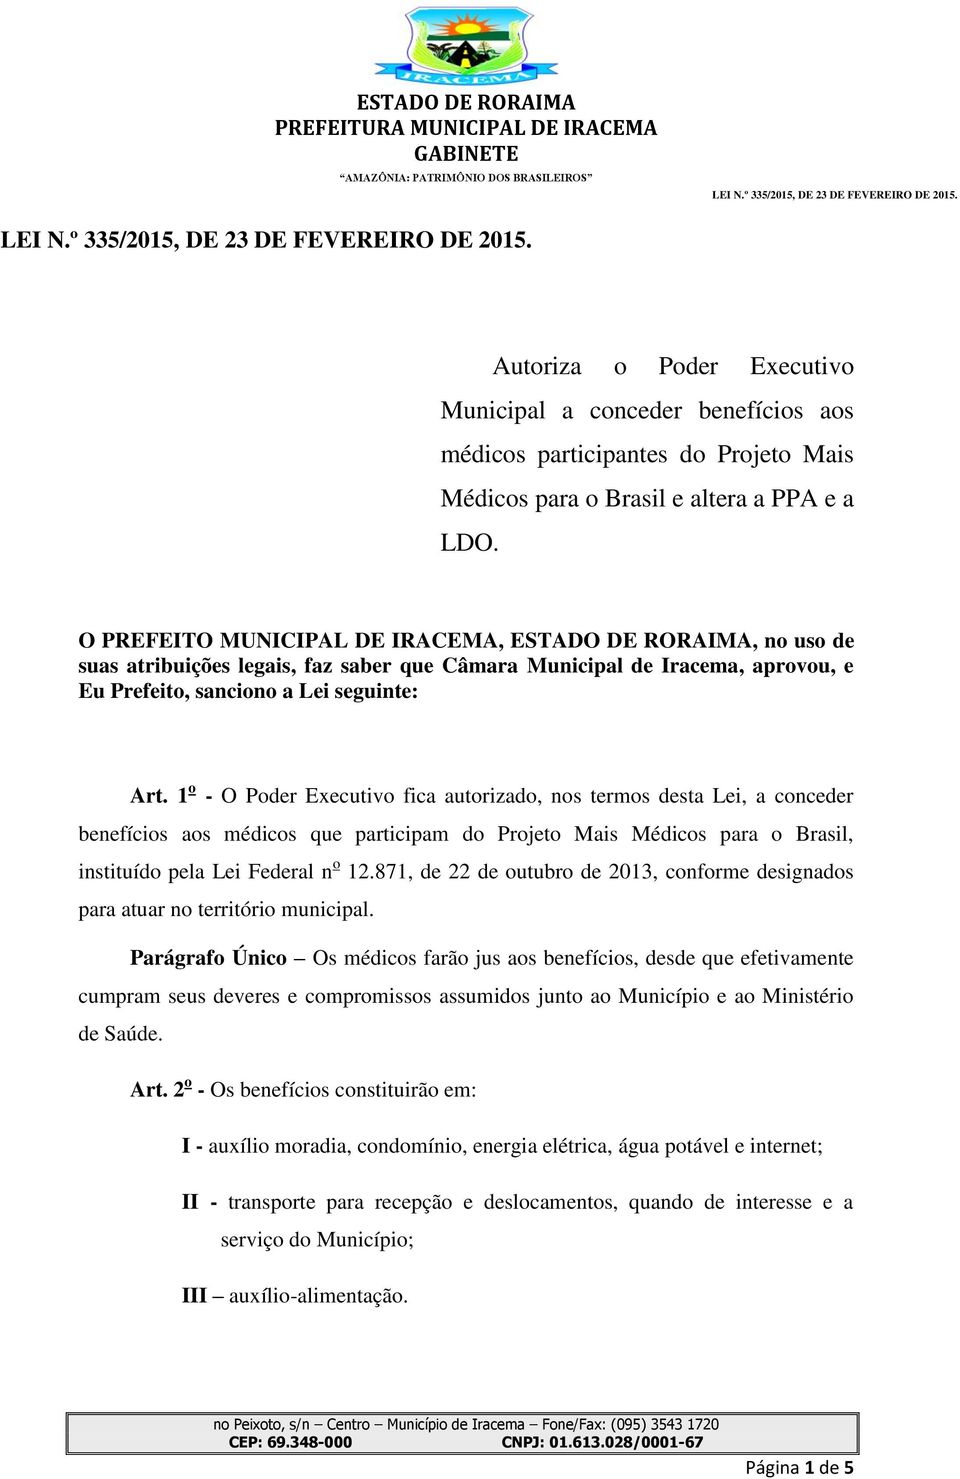 1 o - O Poder Executivo fica autorizado, nos termos desta Lei, a conceder benefícios aos médicos que participam do Projeto Mais Médicos para o Brasil, instituído pela Lei Federal n o 12.